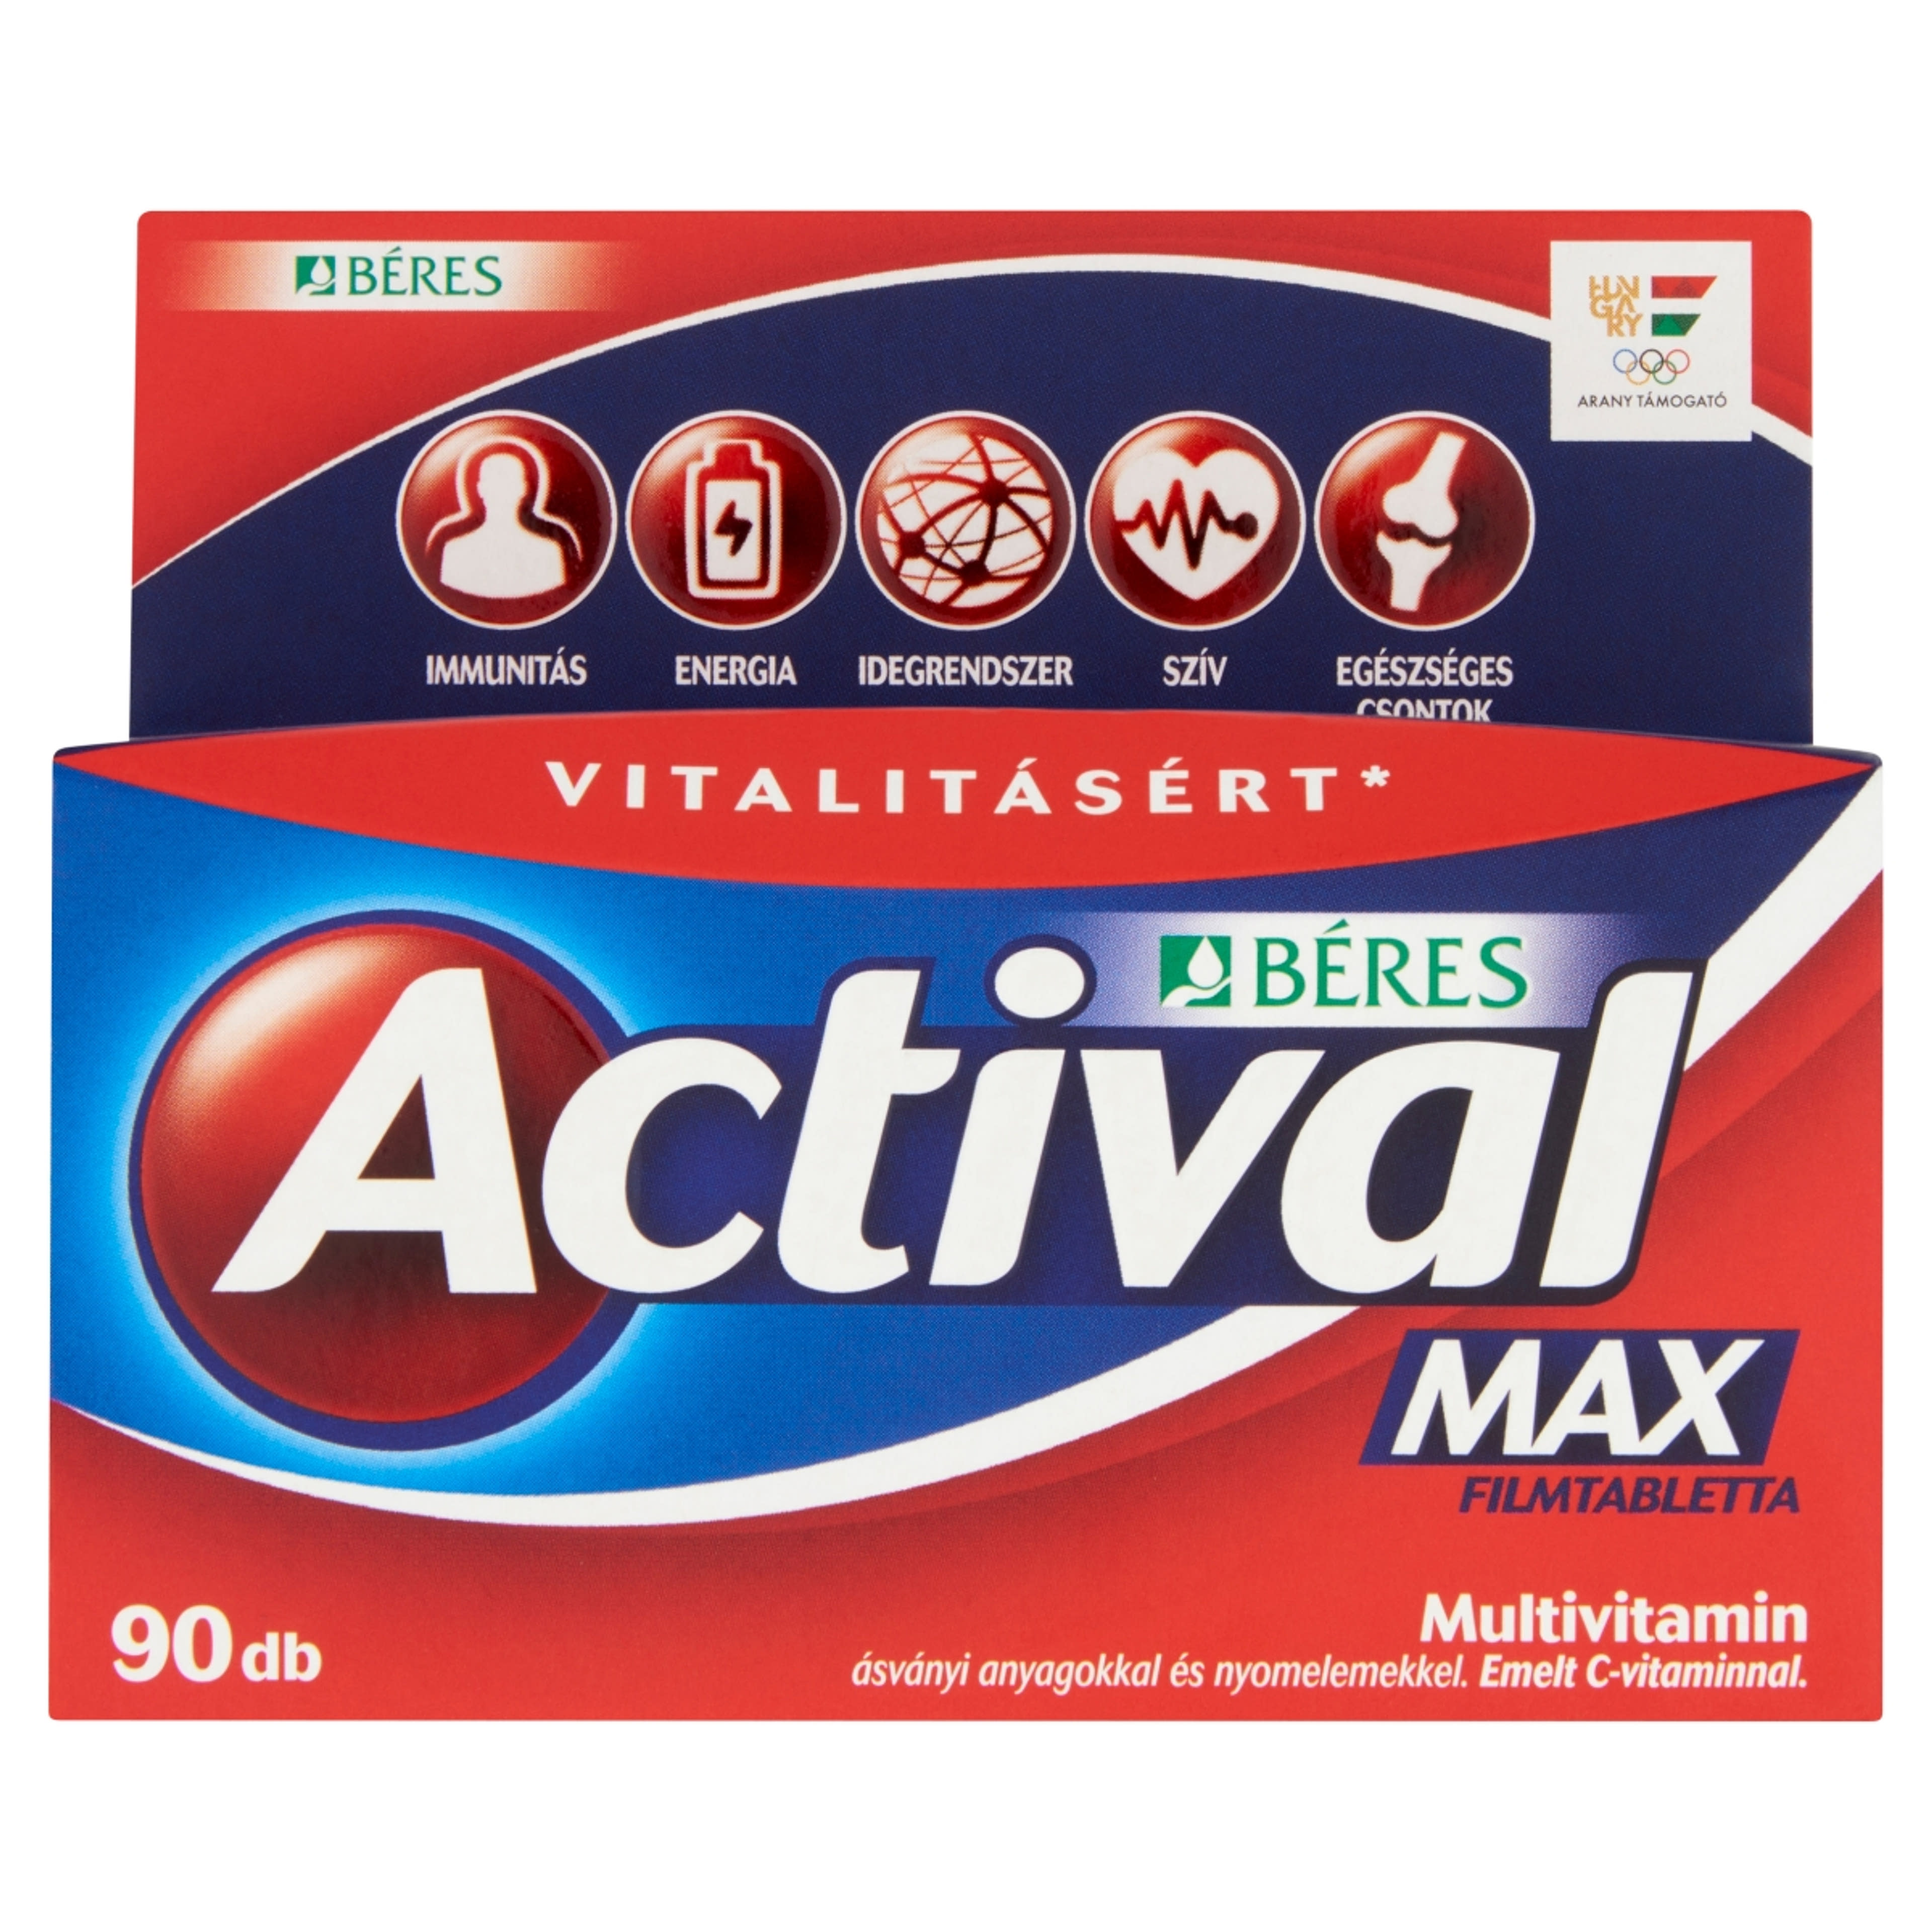 Actival Max tabletta - 90 db